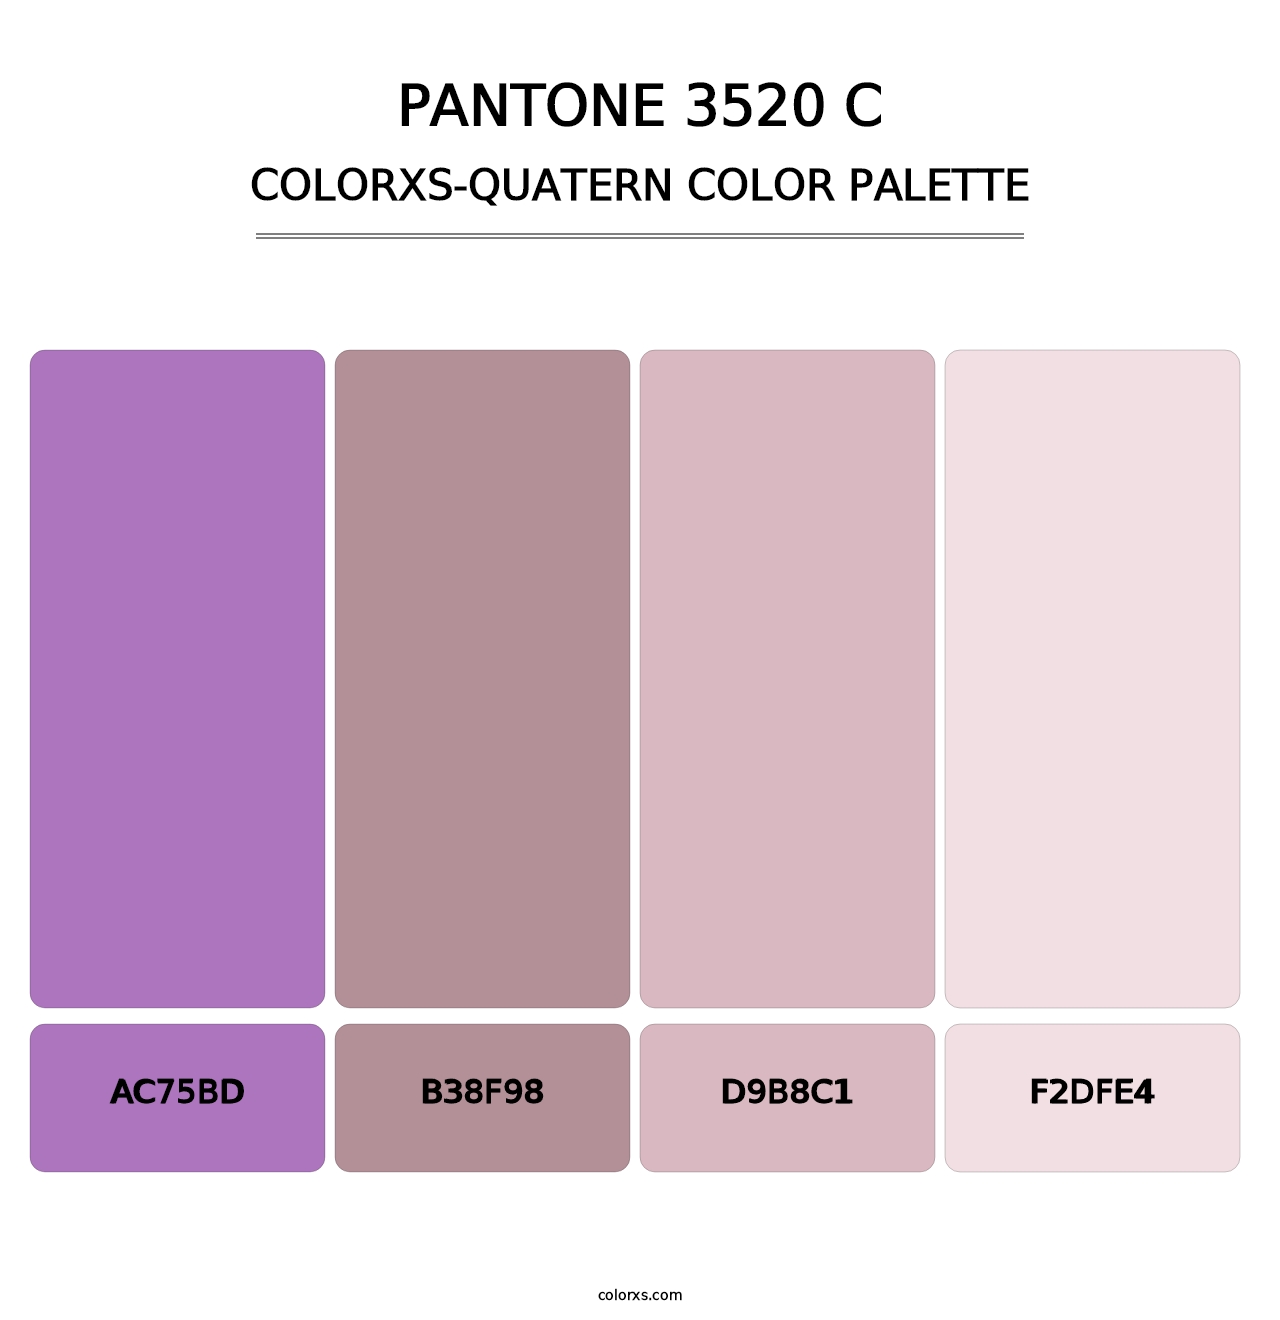 PANTONE 3520 C - Colorxs Quatern Palette